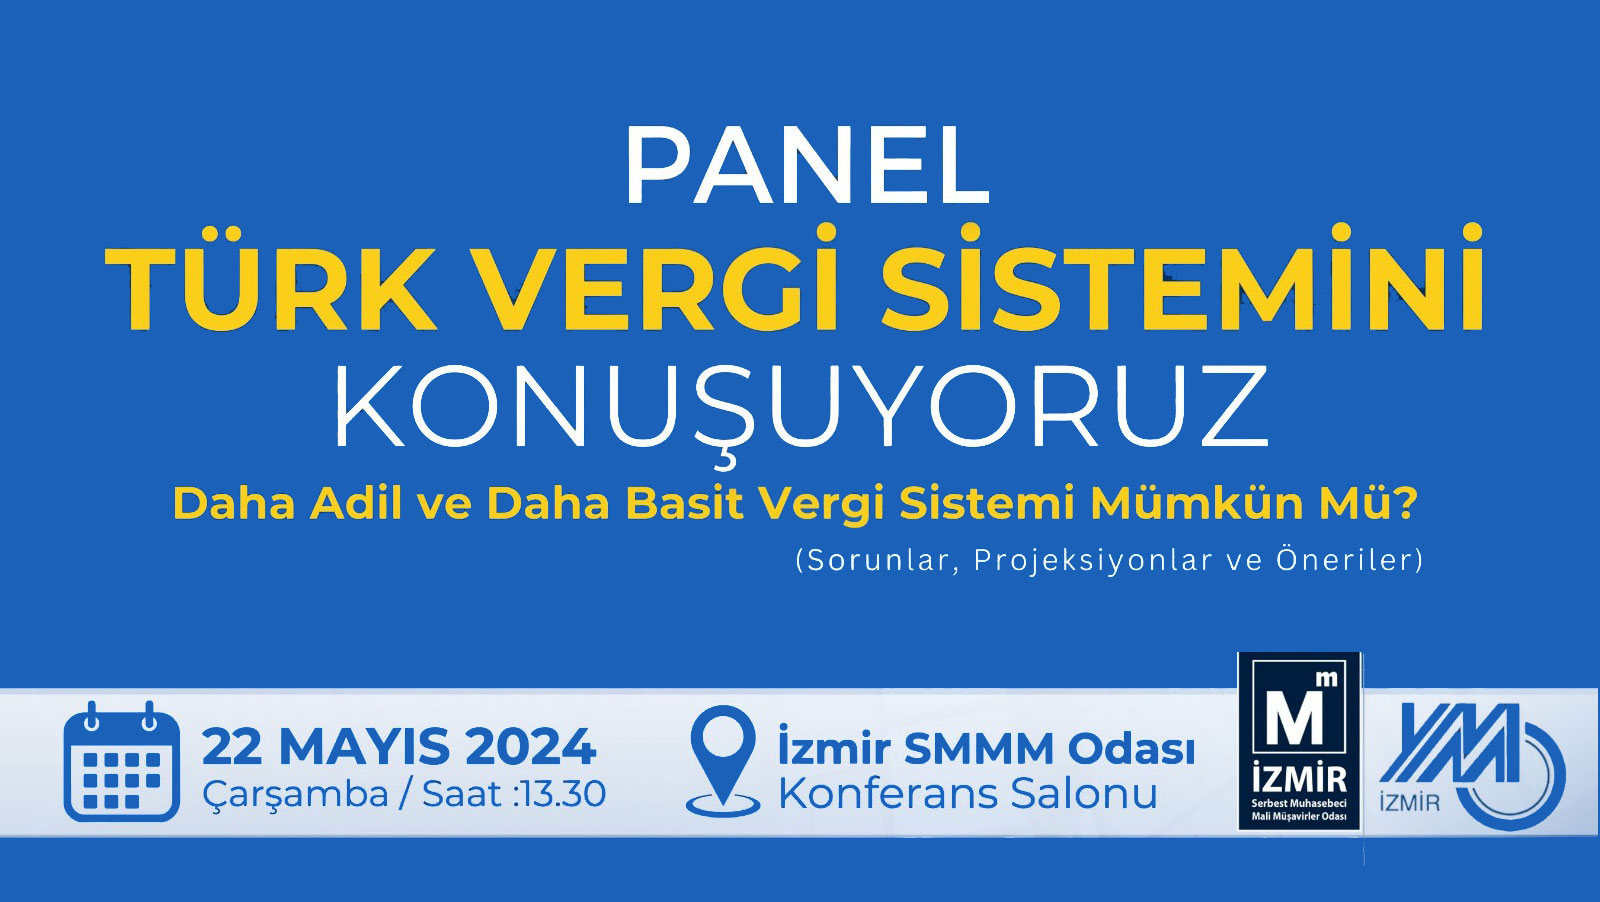 "Türk Vergi Sistemi" panelde konuşulacak